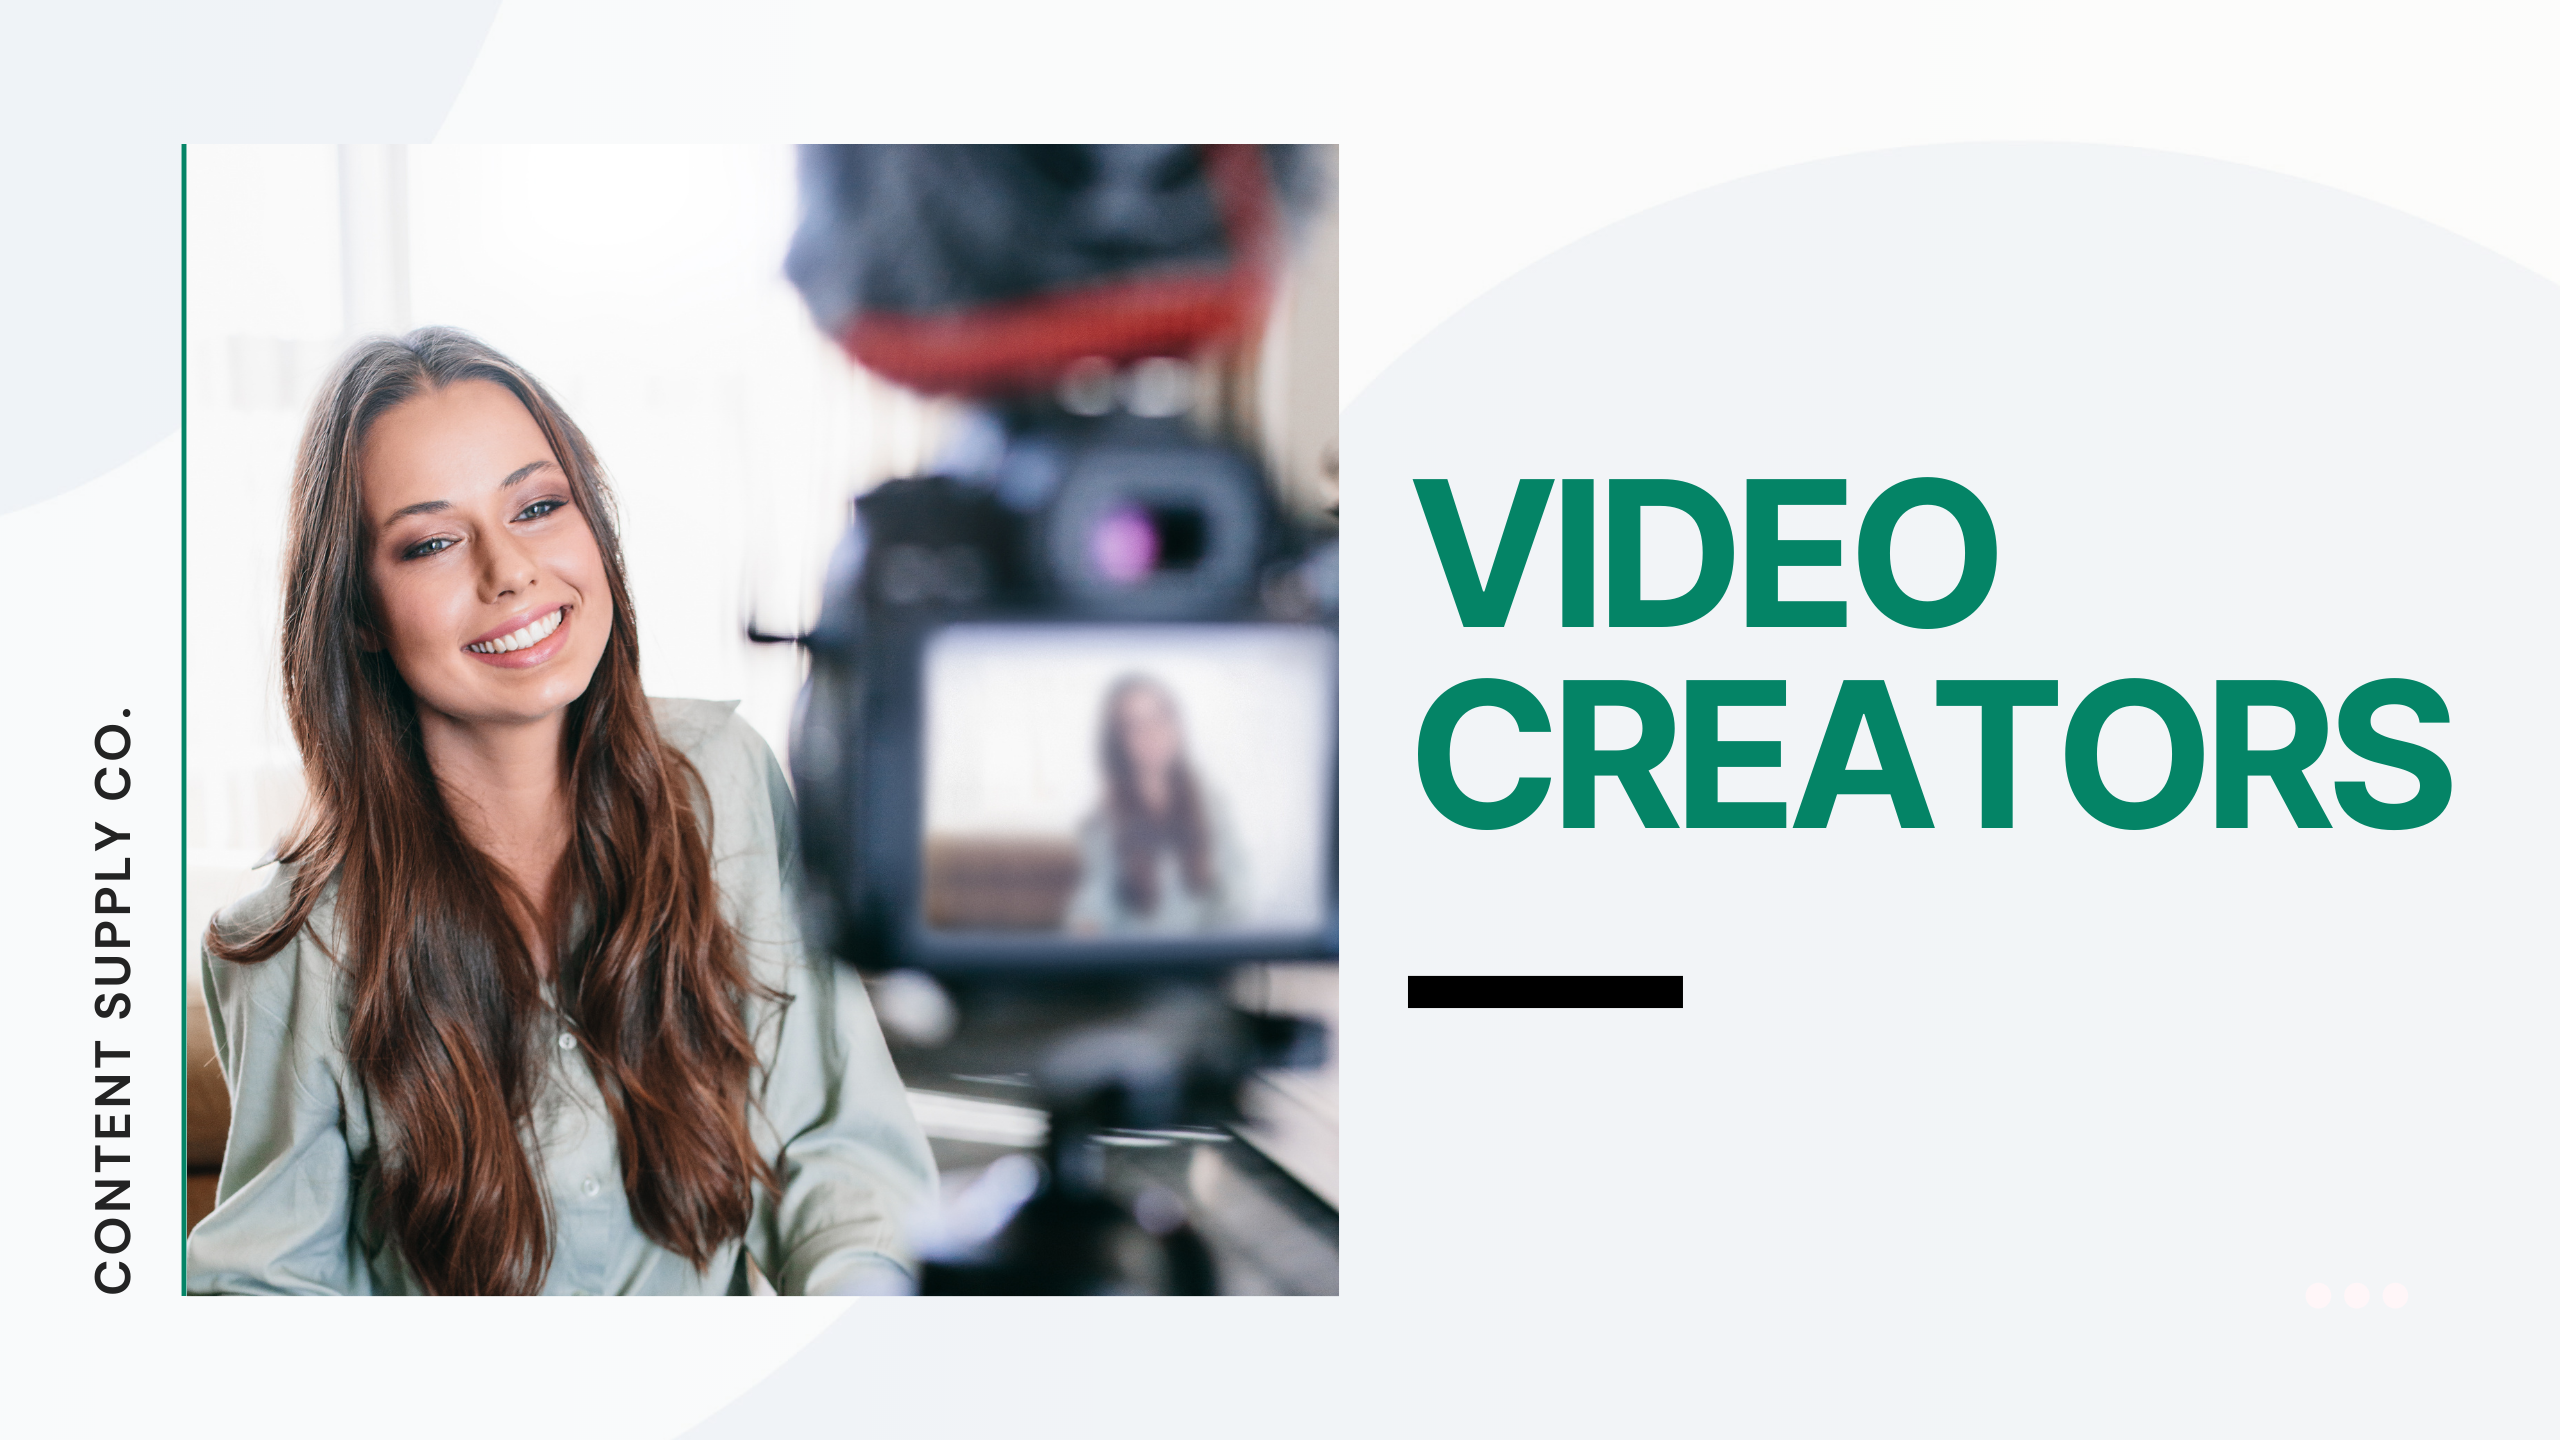 Dallin Nead – Video Creators